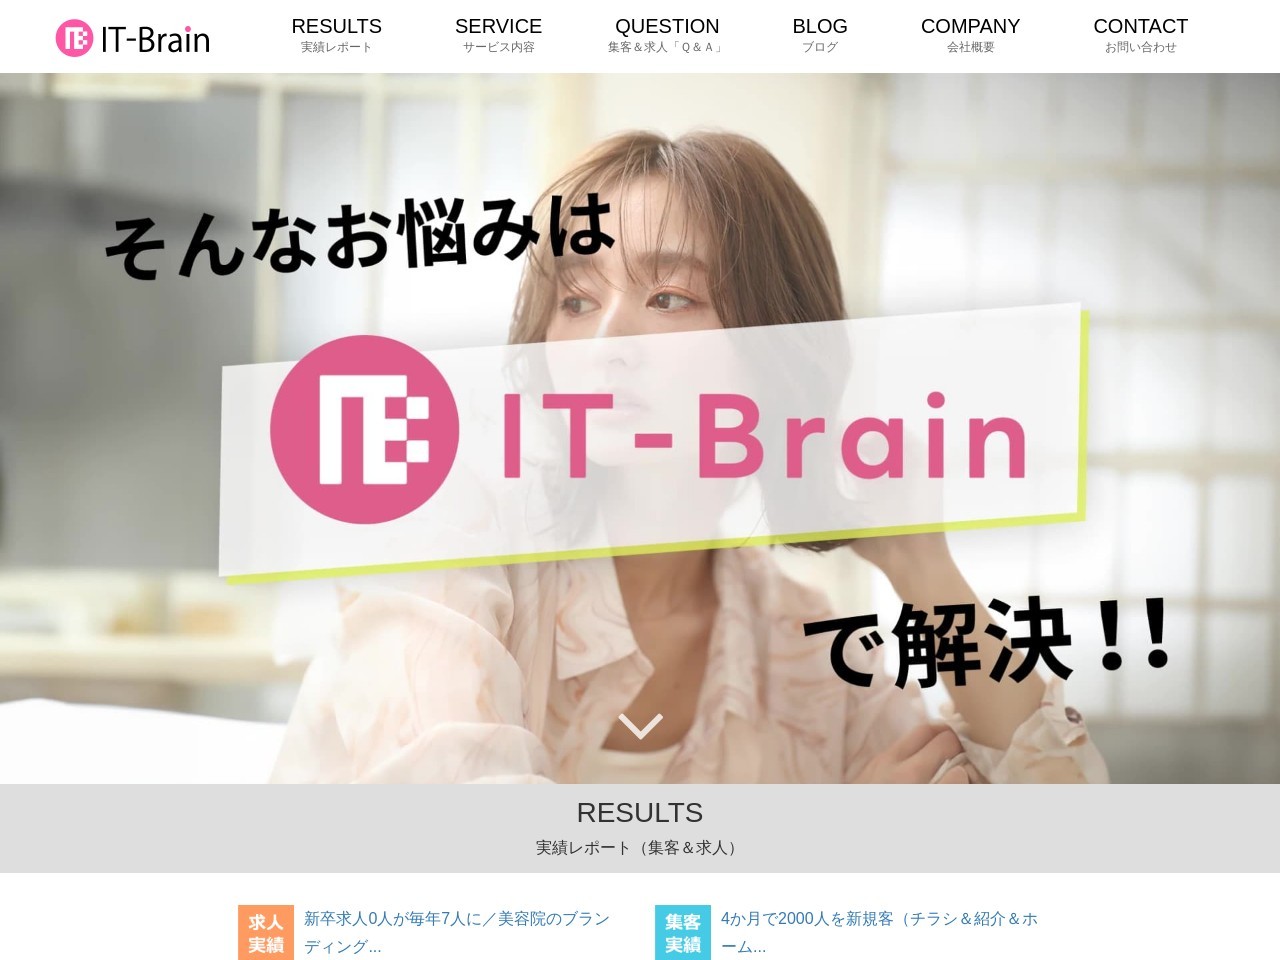 株式会社IT-Brain